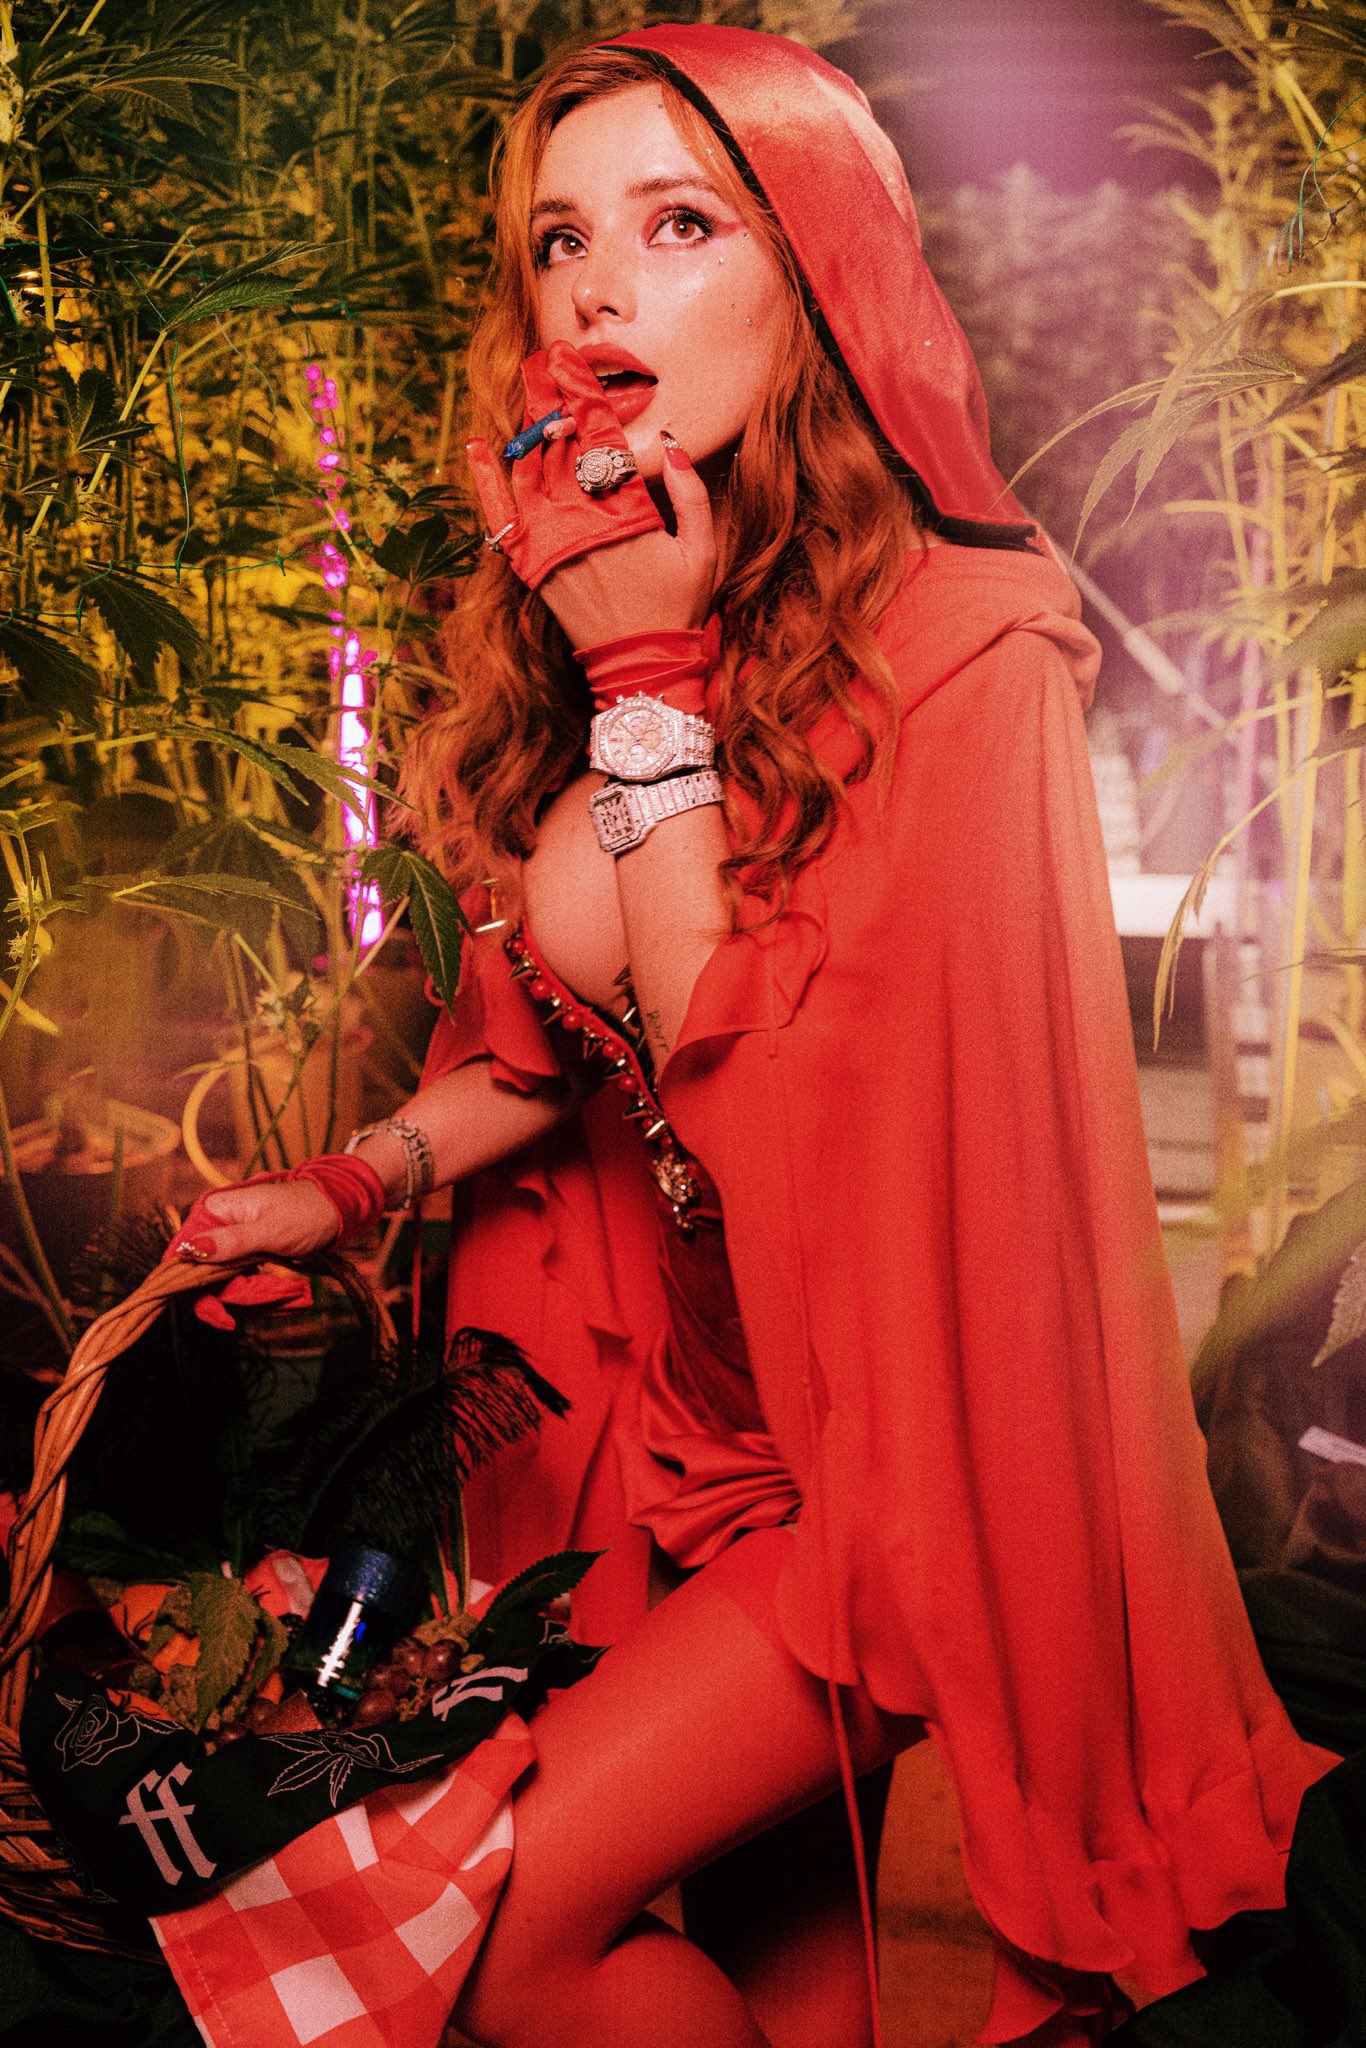 Fotos n°2 : Bella Thorne es una pequea cabeza de olla roja!